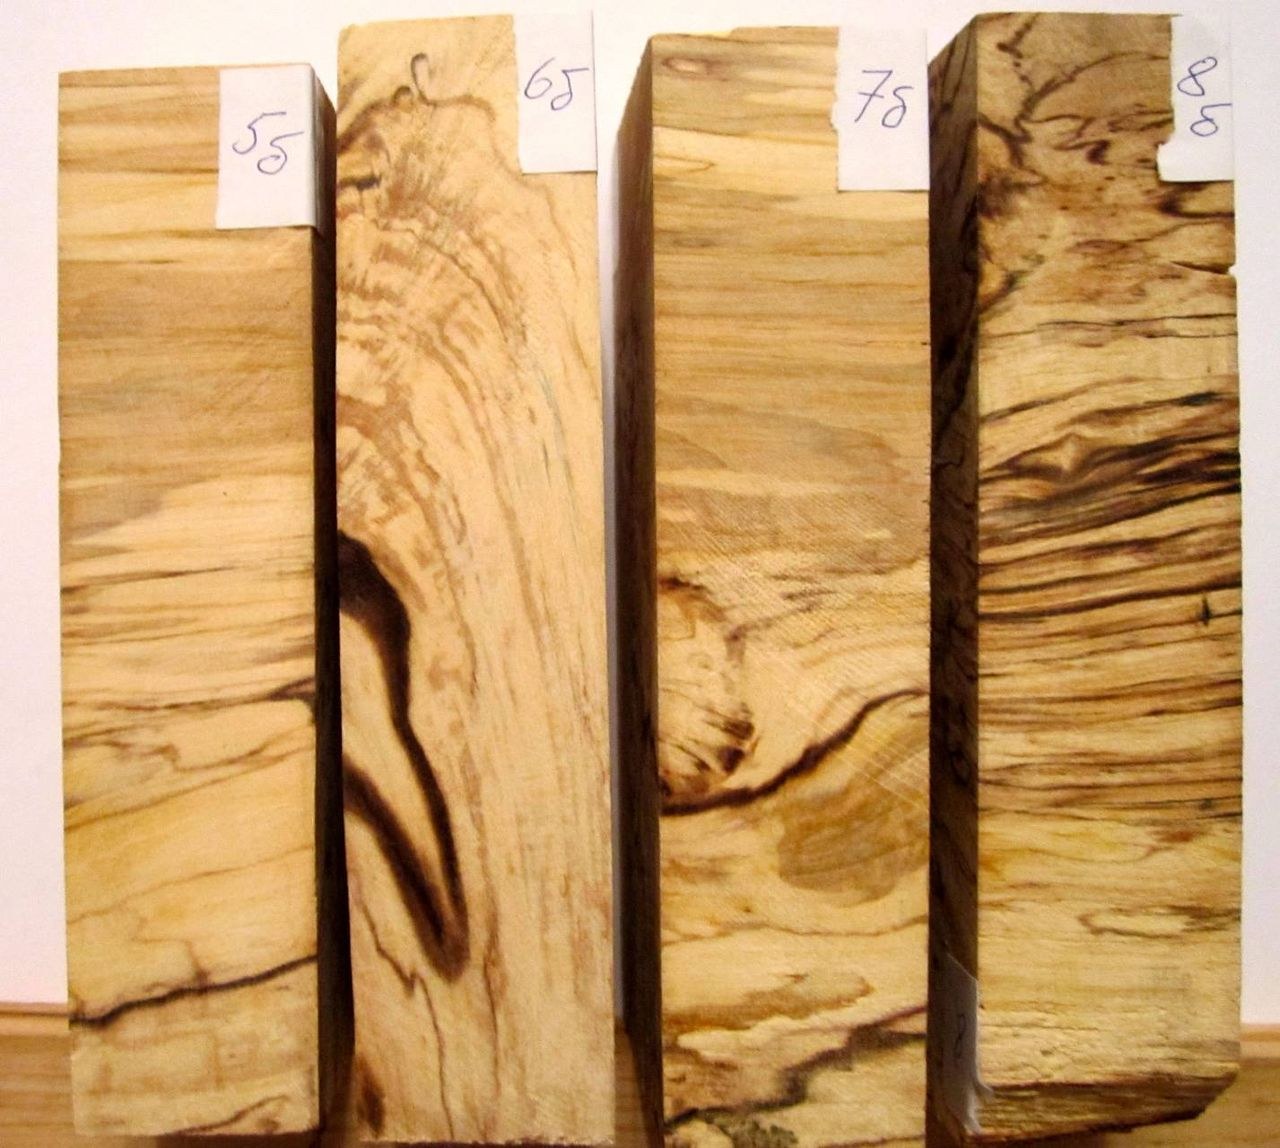 Ценные породы растений. Доски разных пород дерева. Экзотические породы дерева. Ценные породы древесины. Сорта дерева.